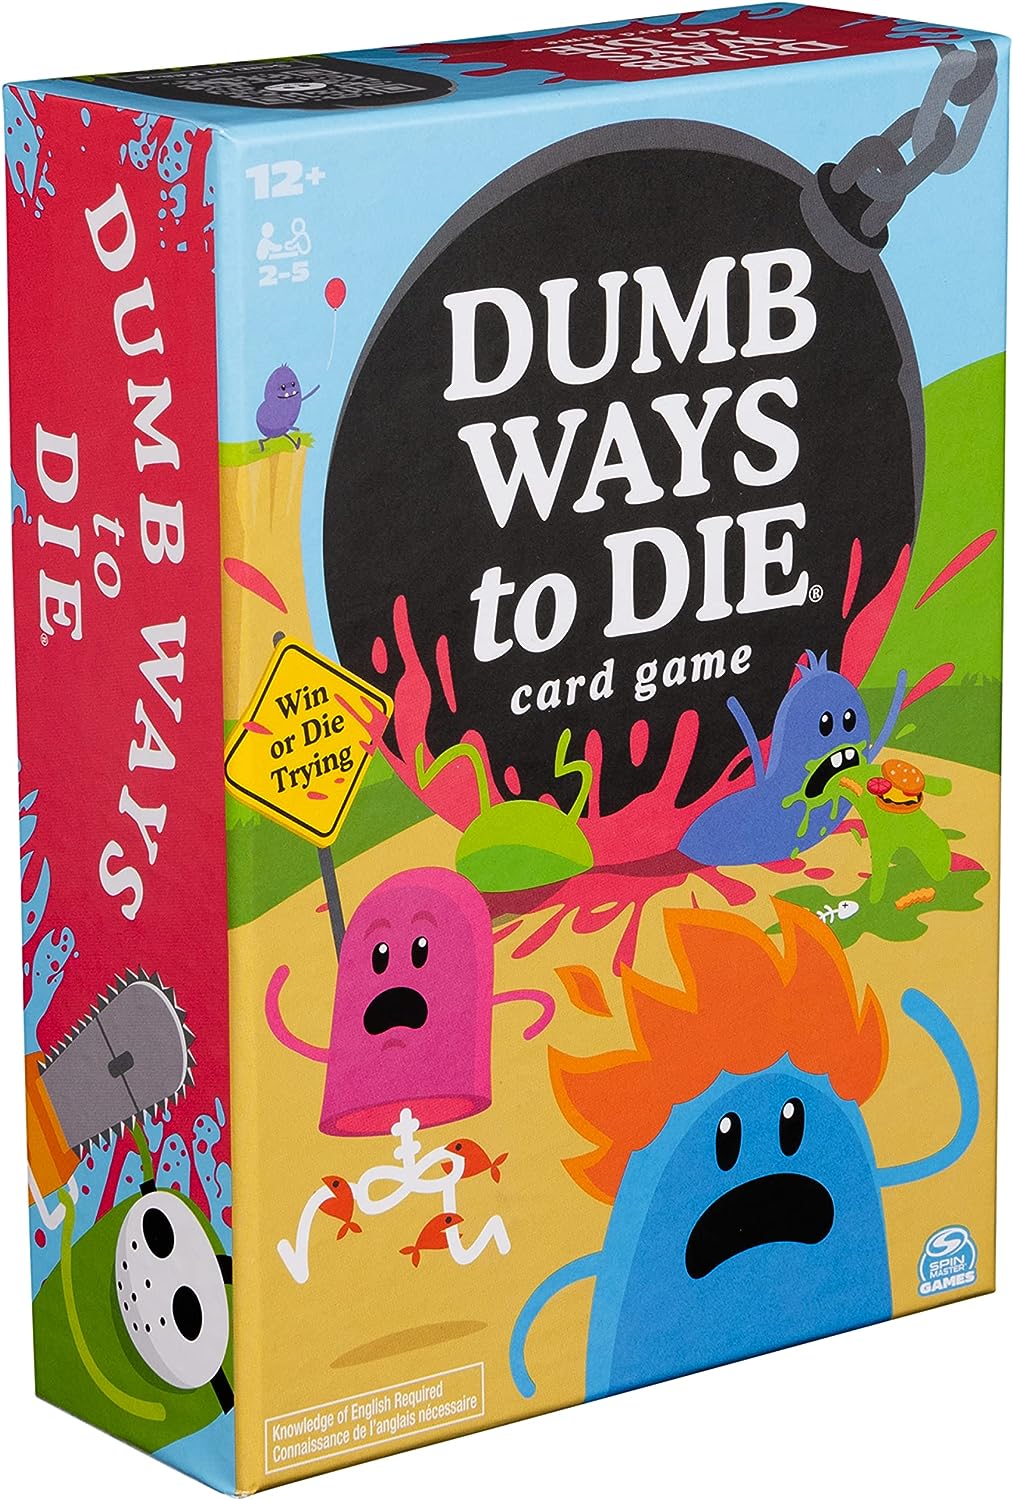 Dumb Ways to Die, The Game!